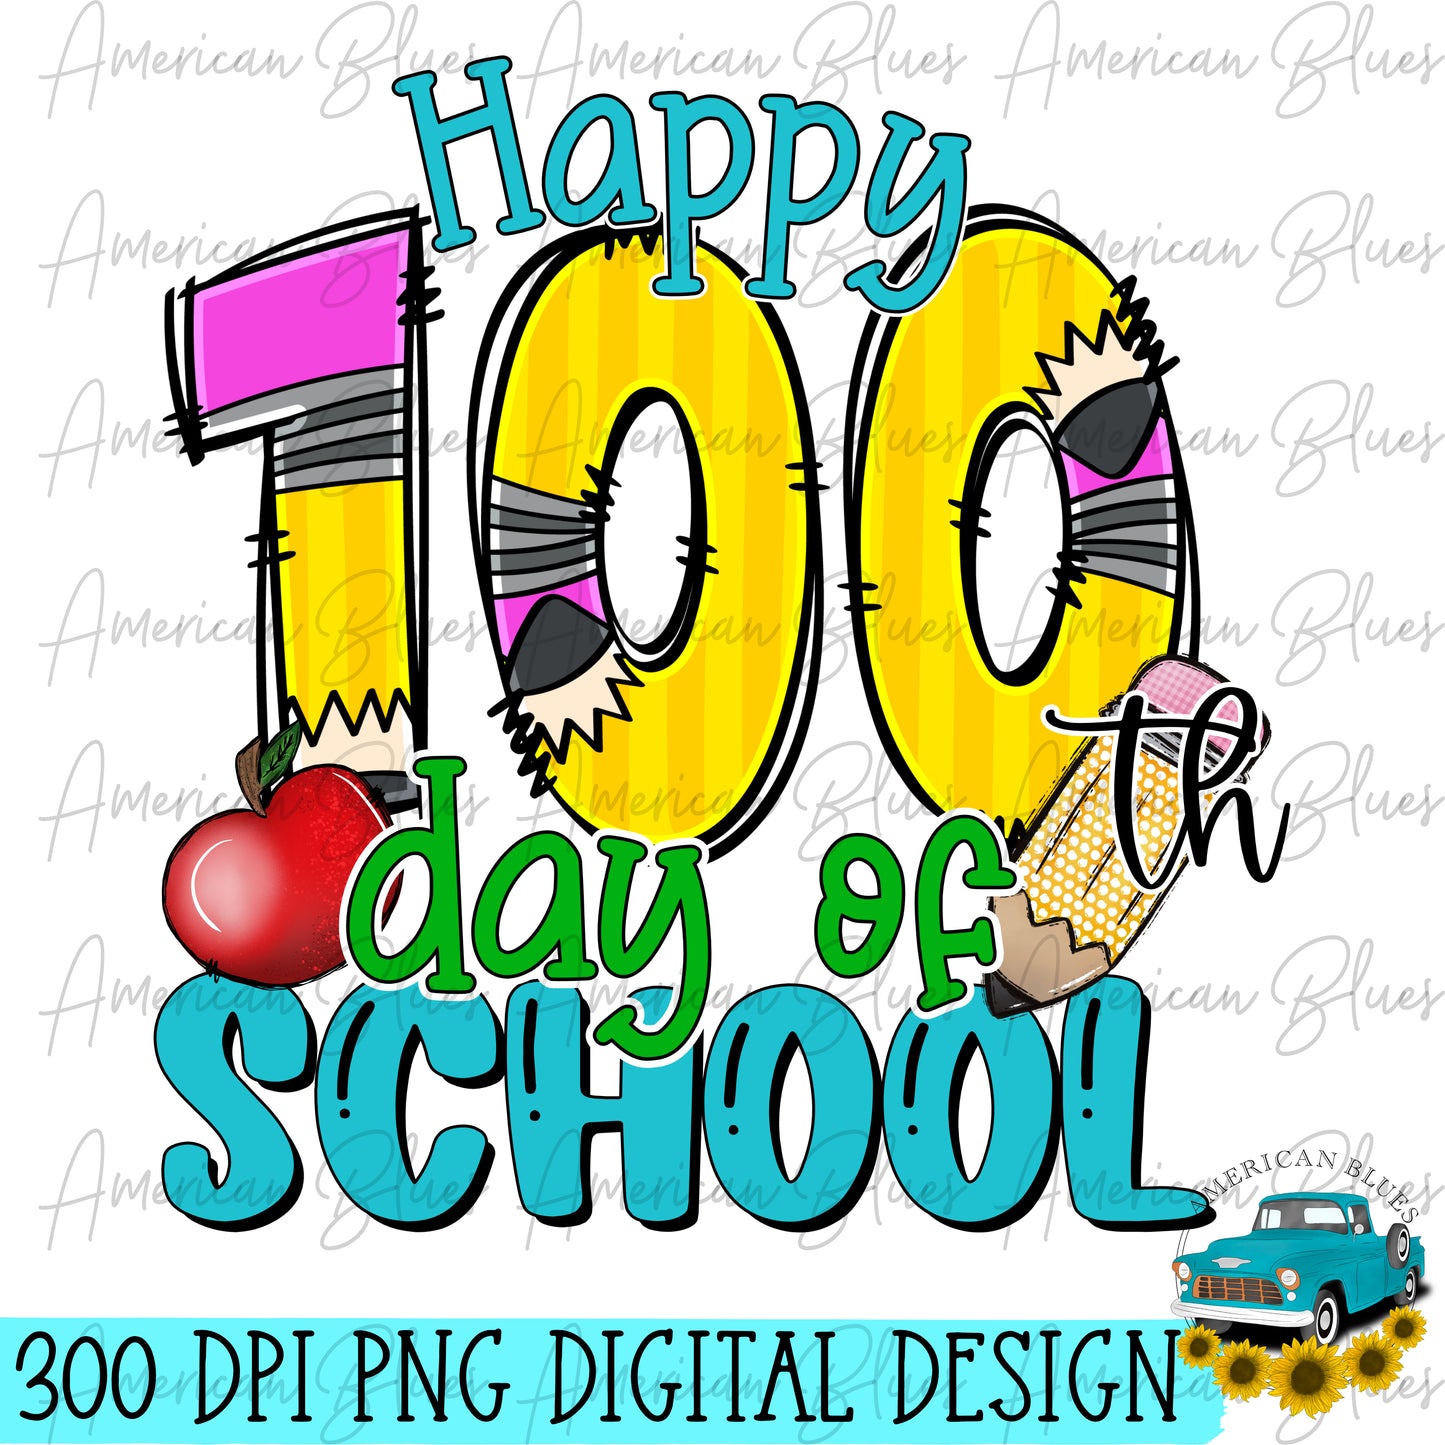 100 days of school- pencils